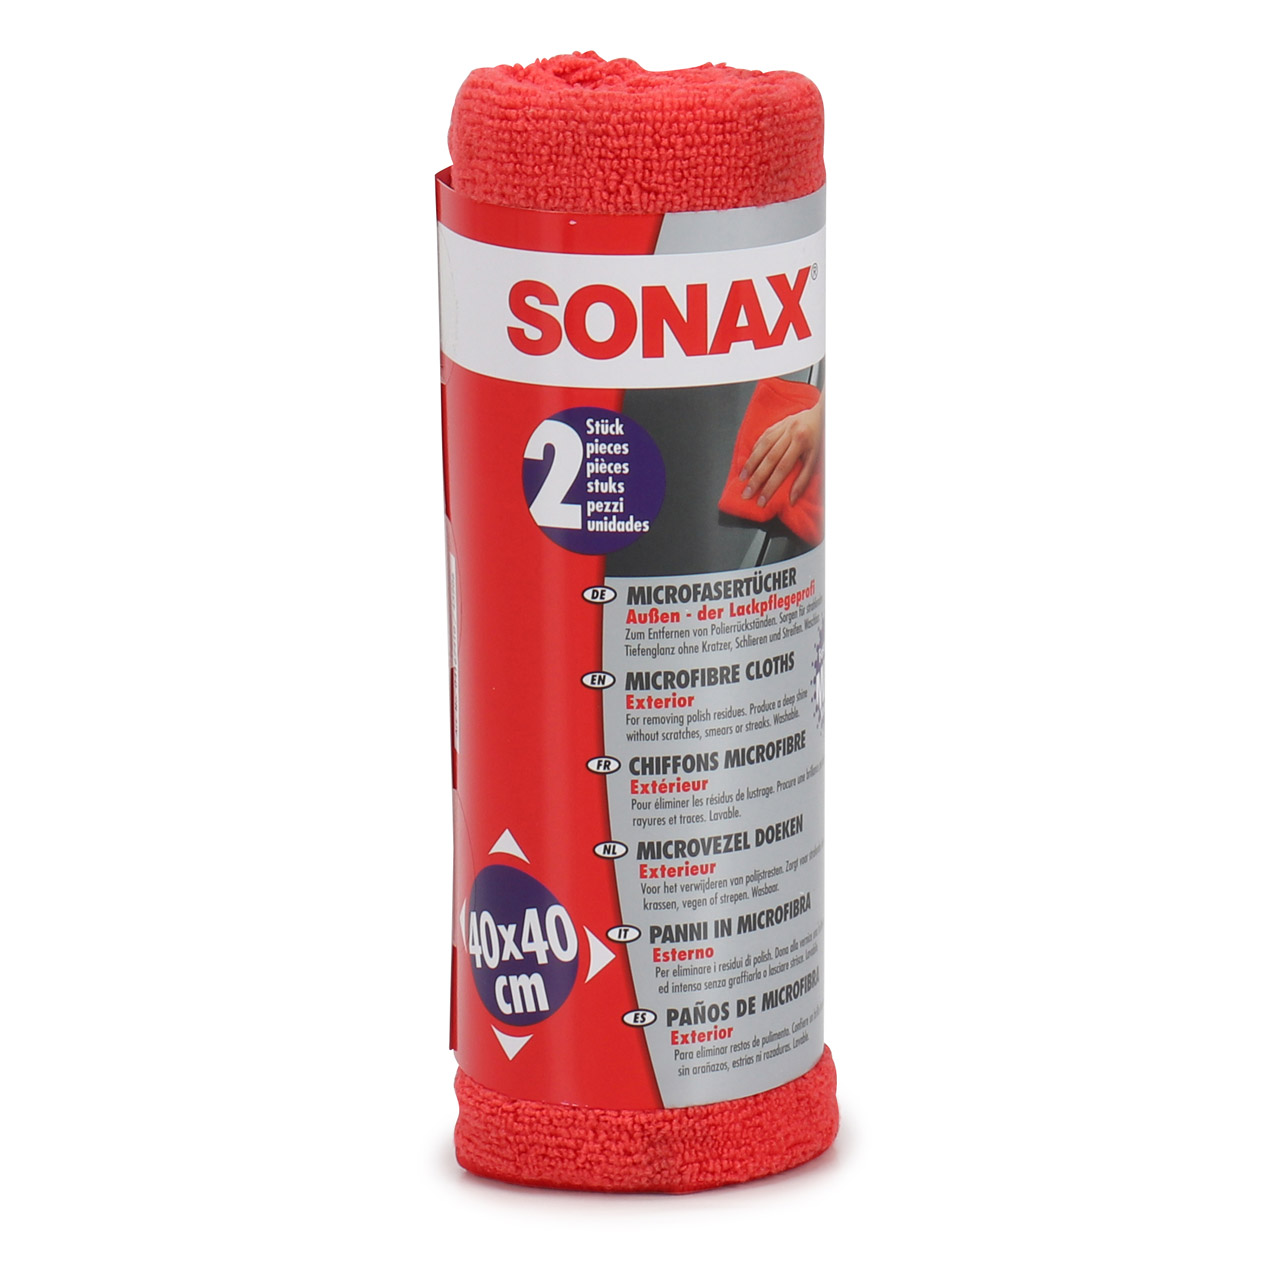 SONAX MicrofaserTücher Außen - der Lackpflegeprofi 2 Stück 416241